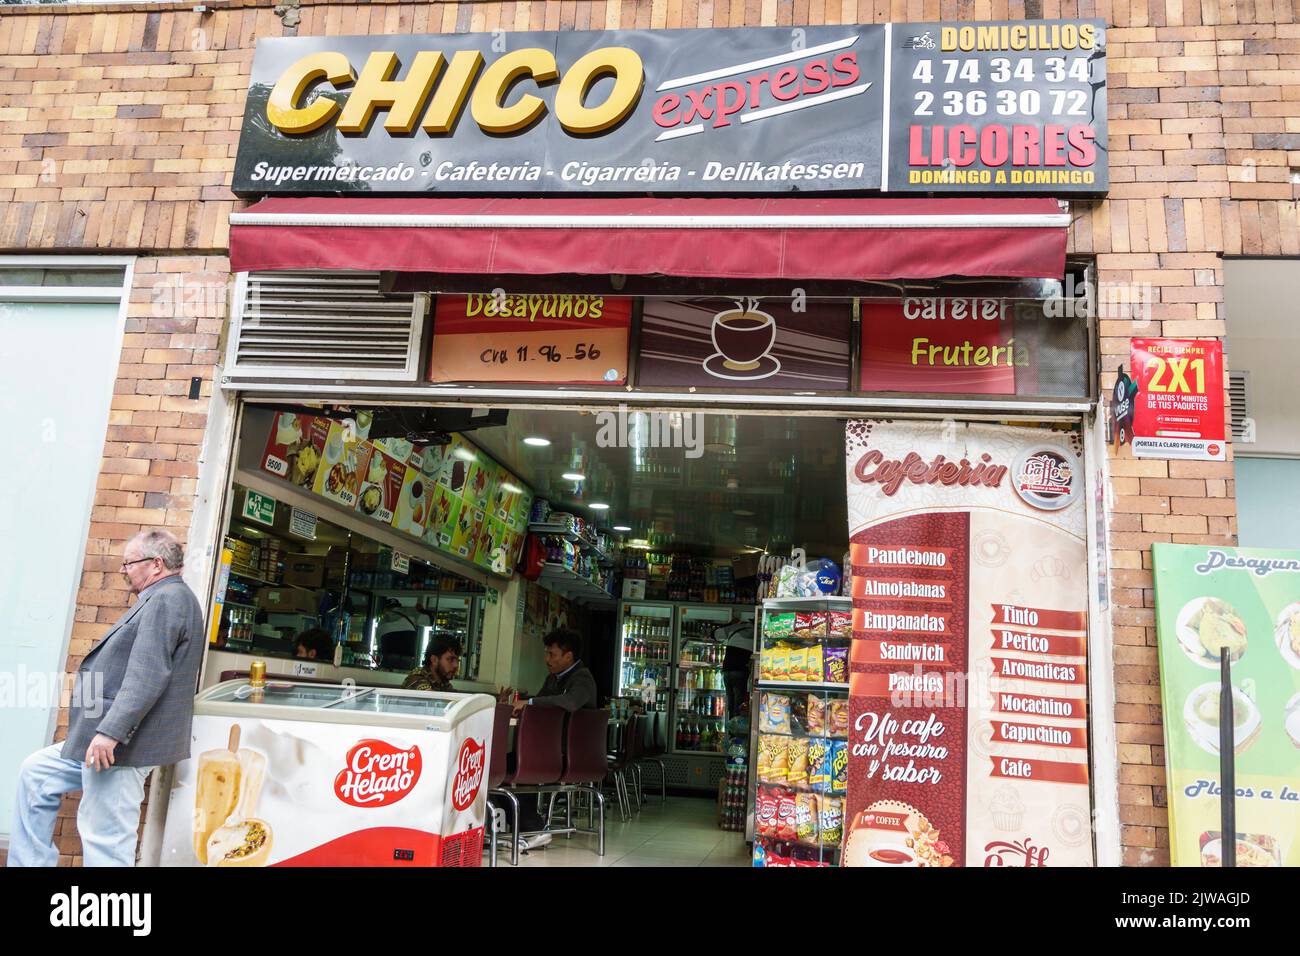 Bogota Colombia, El Chico Carrera 11, negozi business business negozi mercato mercati vendita vendita shopping, ristorante Restauraura Foto Stock